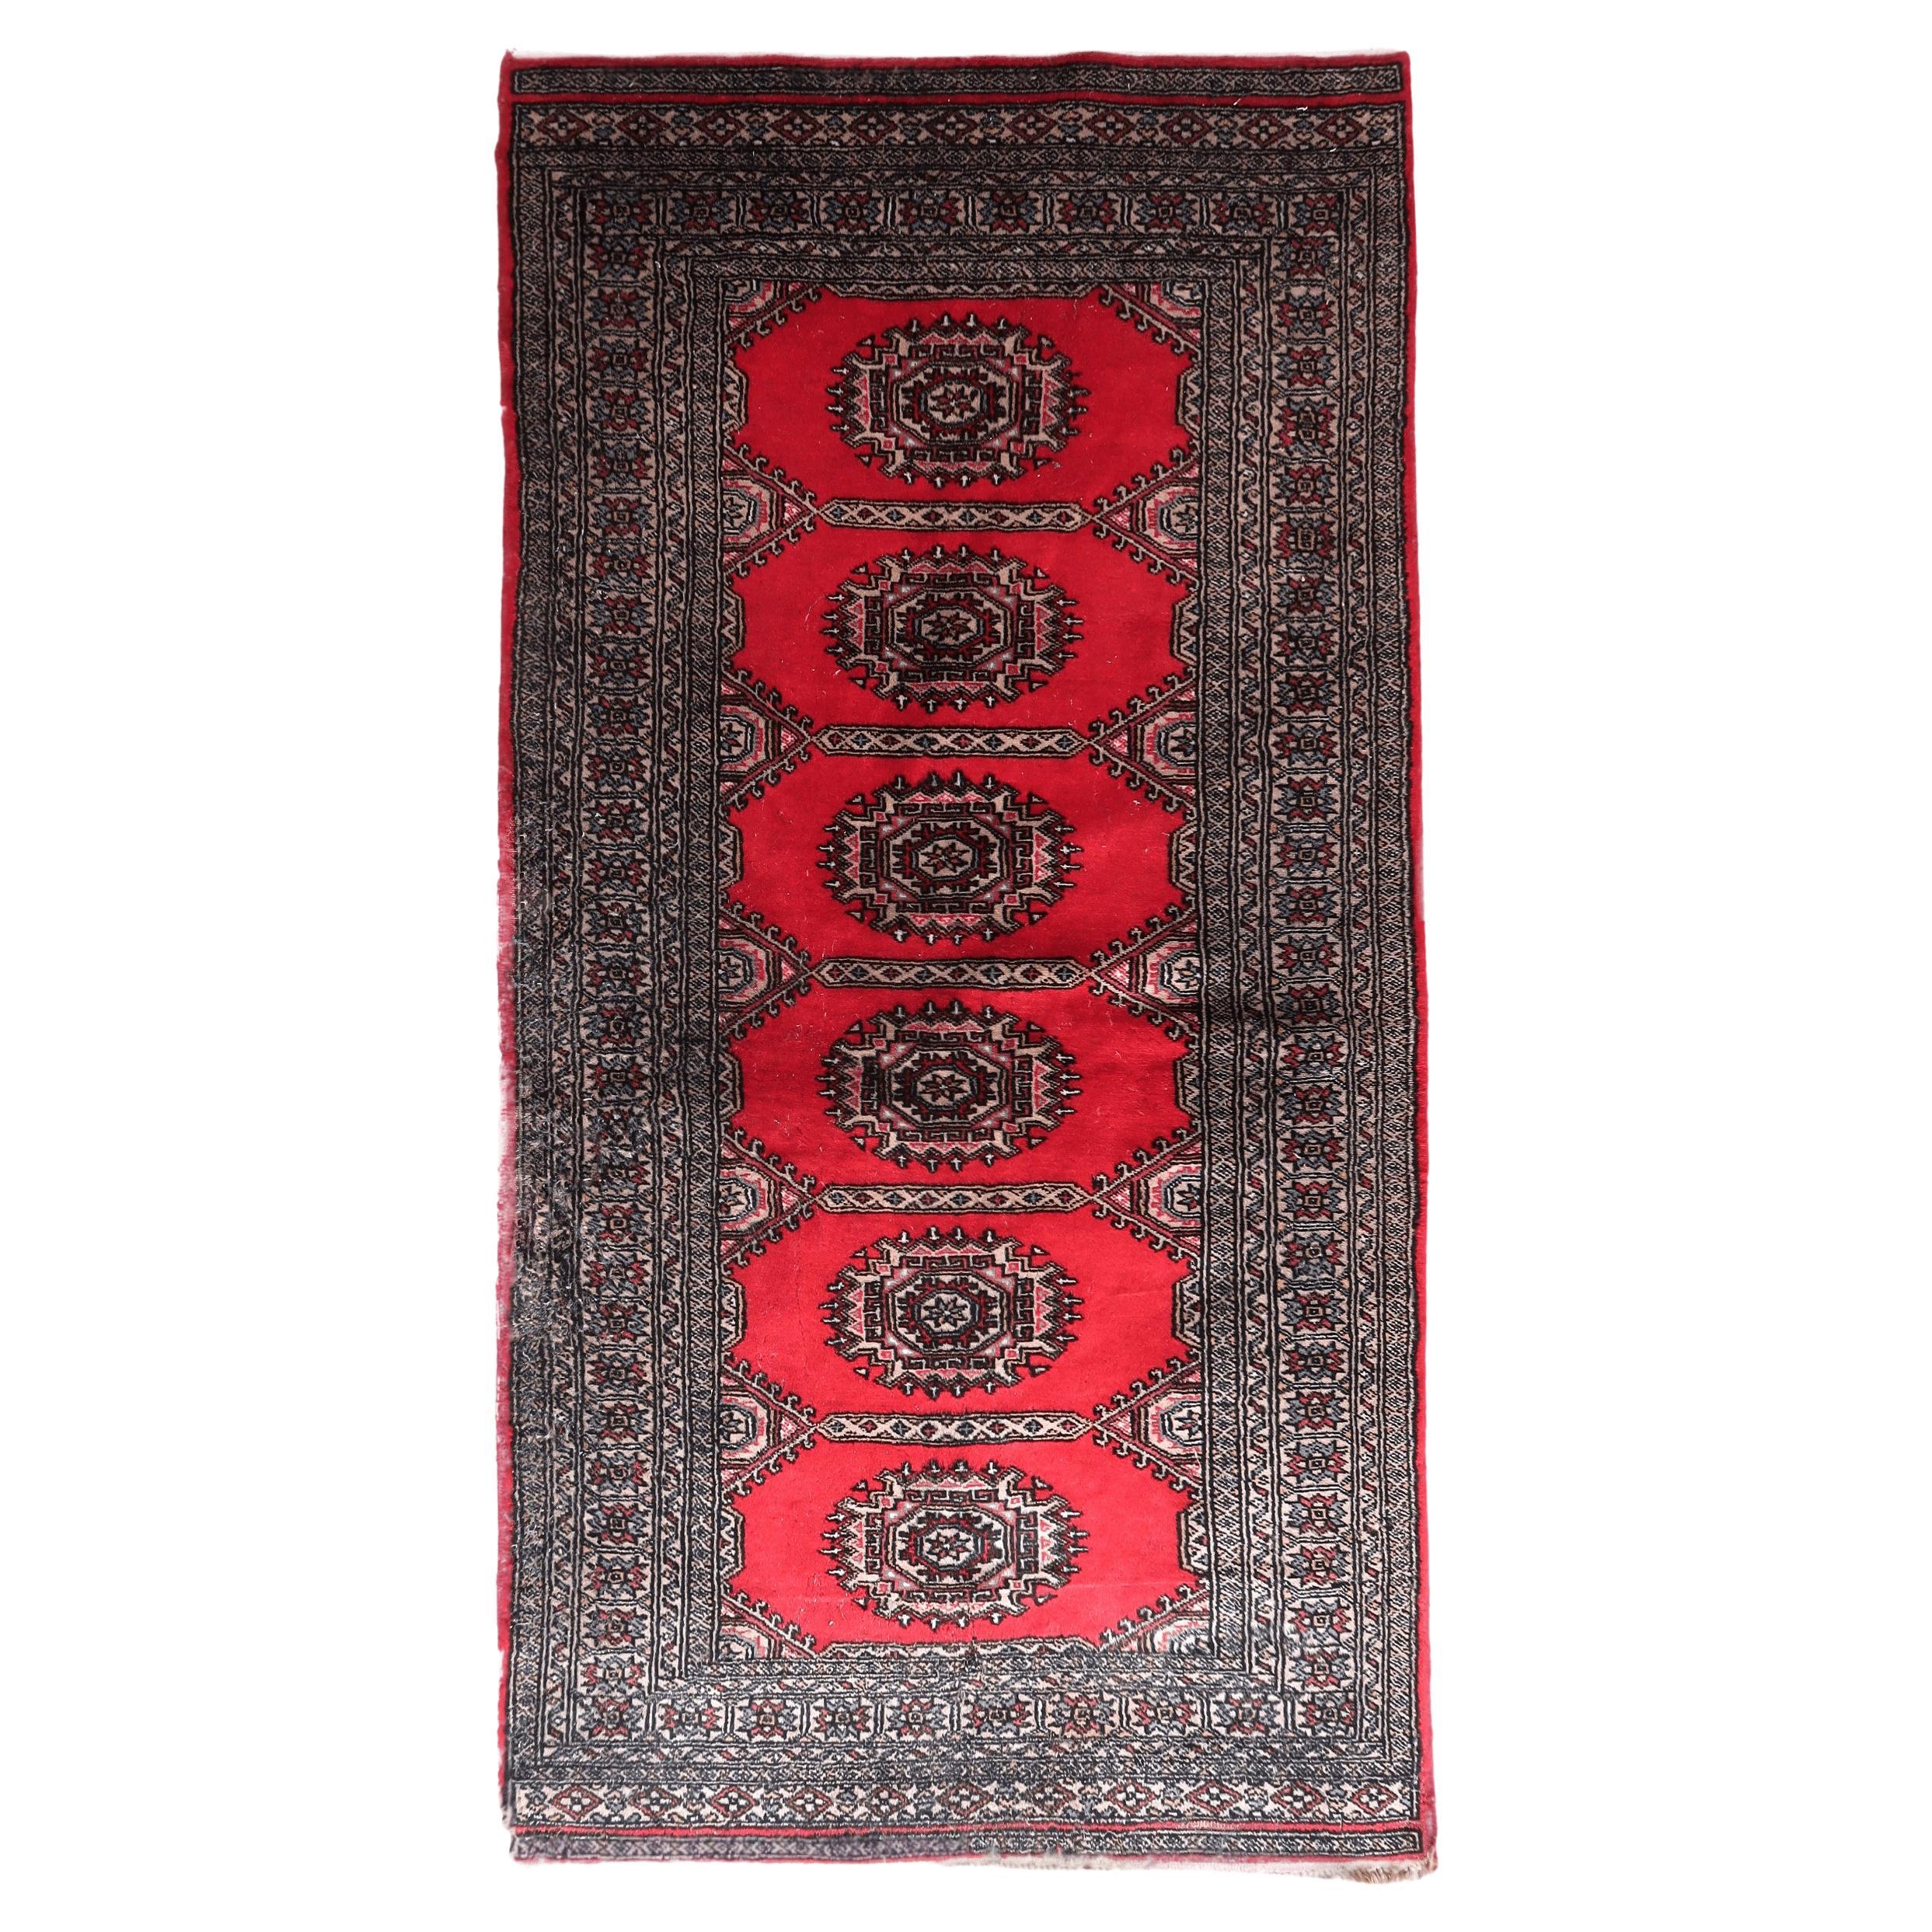 Handmade Vintage Uzbek Bukhara Rug 3' x 6.1', 1960s - 1C1095